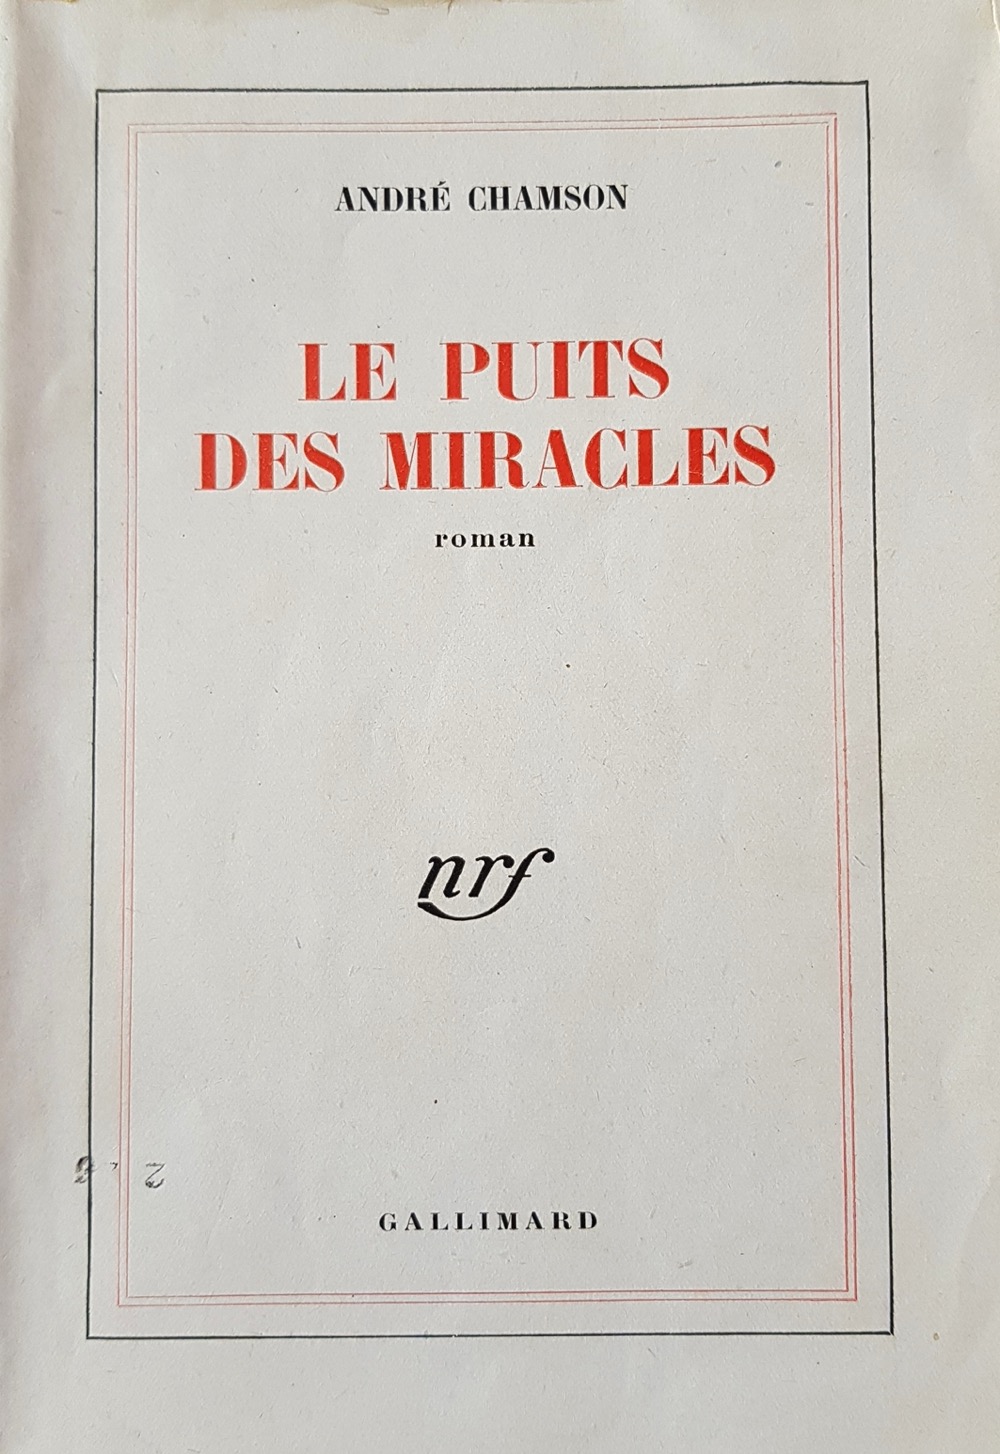 Le Puits des miracles - Gallimard 1945